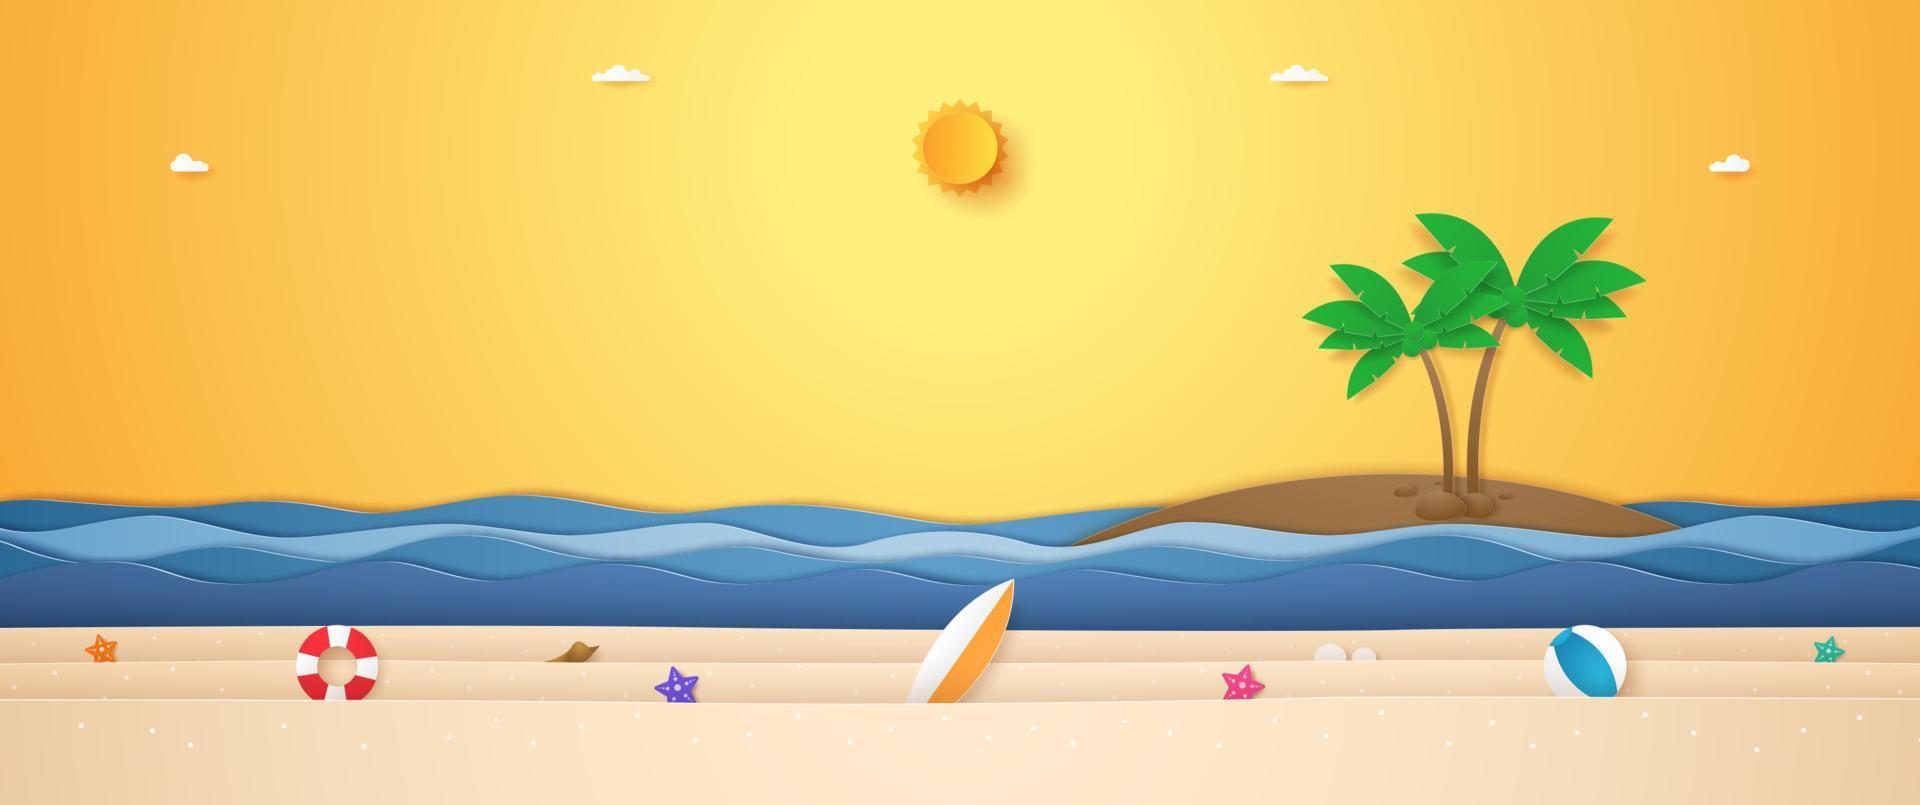 landschap van kokospalm op het eiland, golvende zee en zomerspullen op het strand met felle zon in de zonnige hemel voor de zomer in papieren kunststijl vector